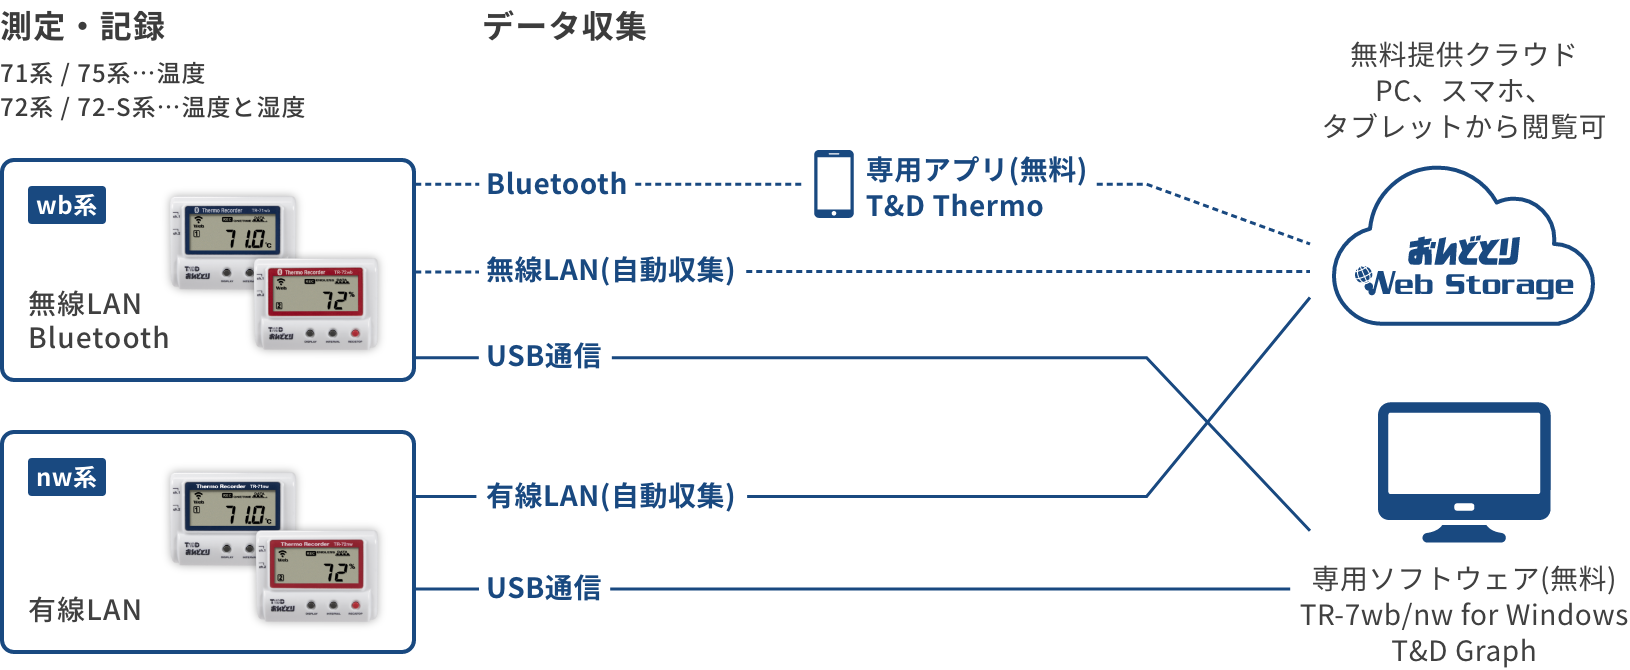 TR-7wb/nwシリーズの構成図